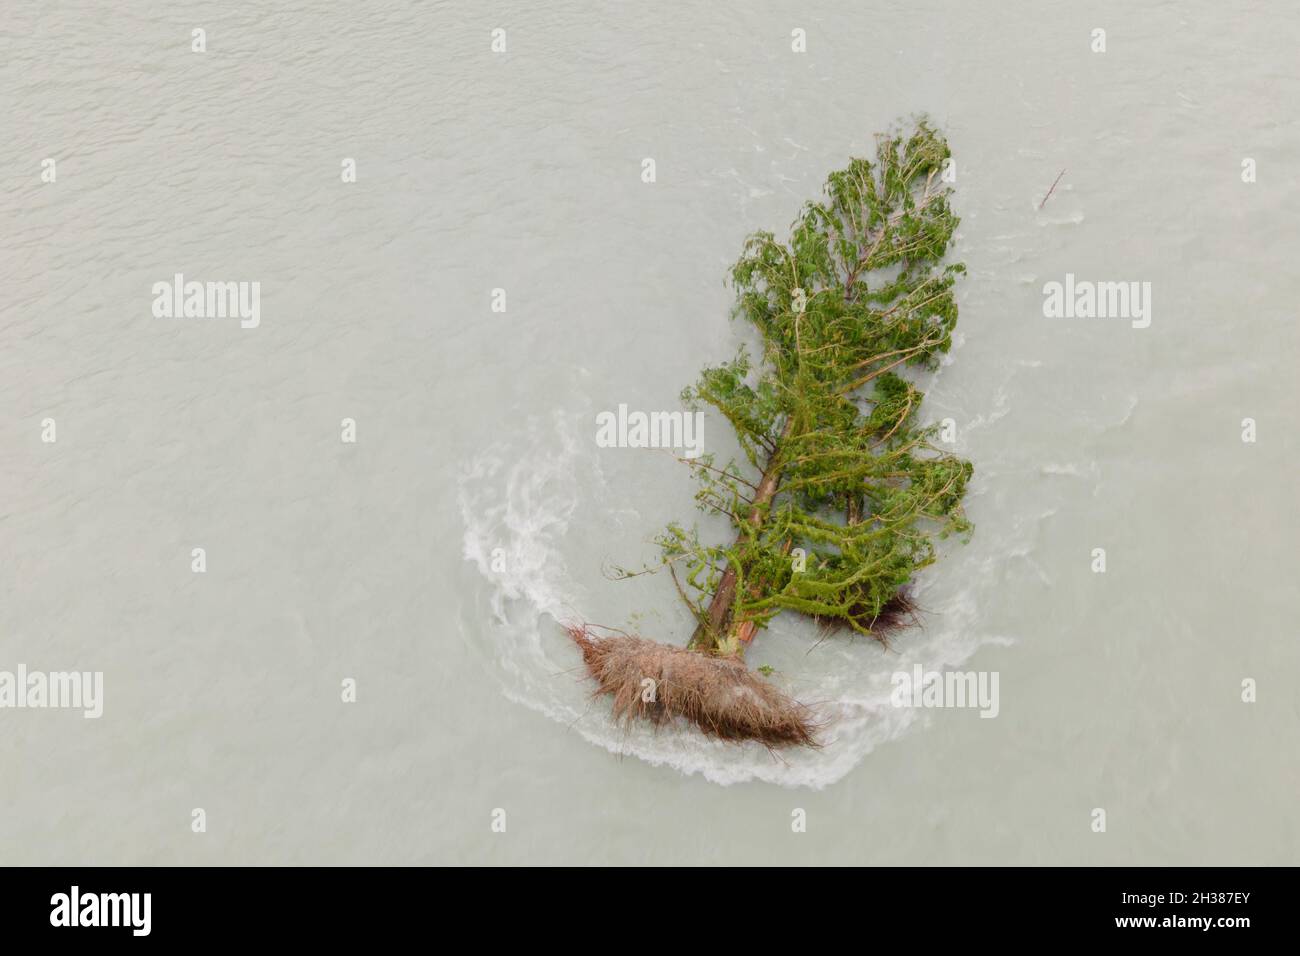 Baum, der von einem großen Regenereignis eingenommen wurde, das durch den Klimawandel verstärkt wurde. Stockfoto